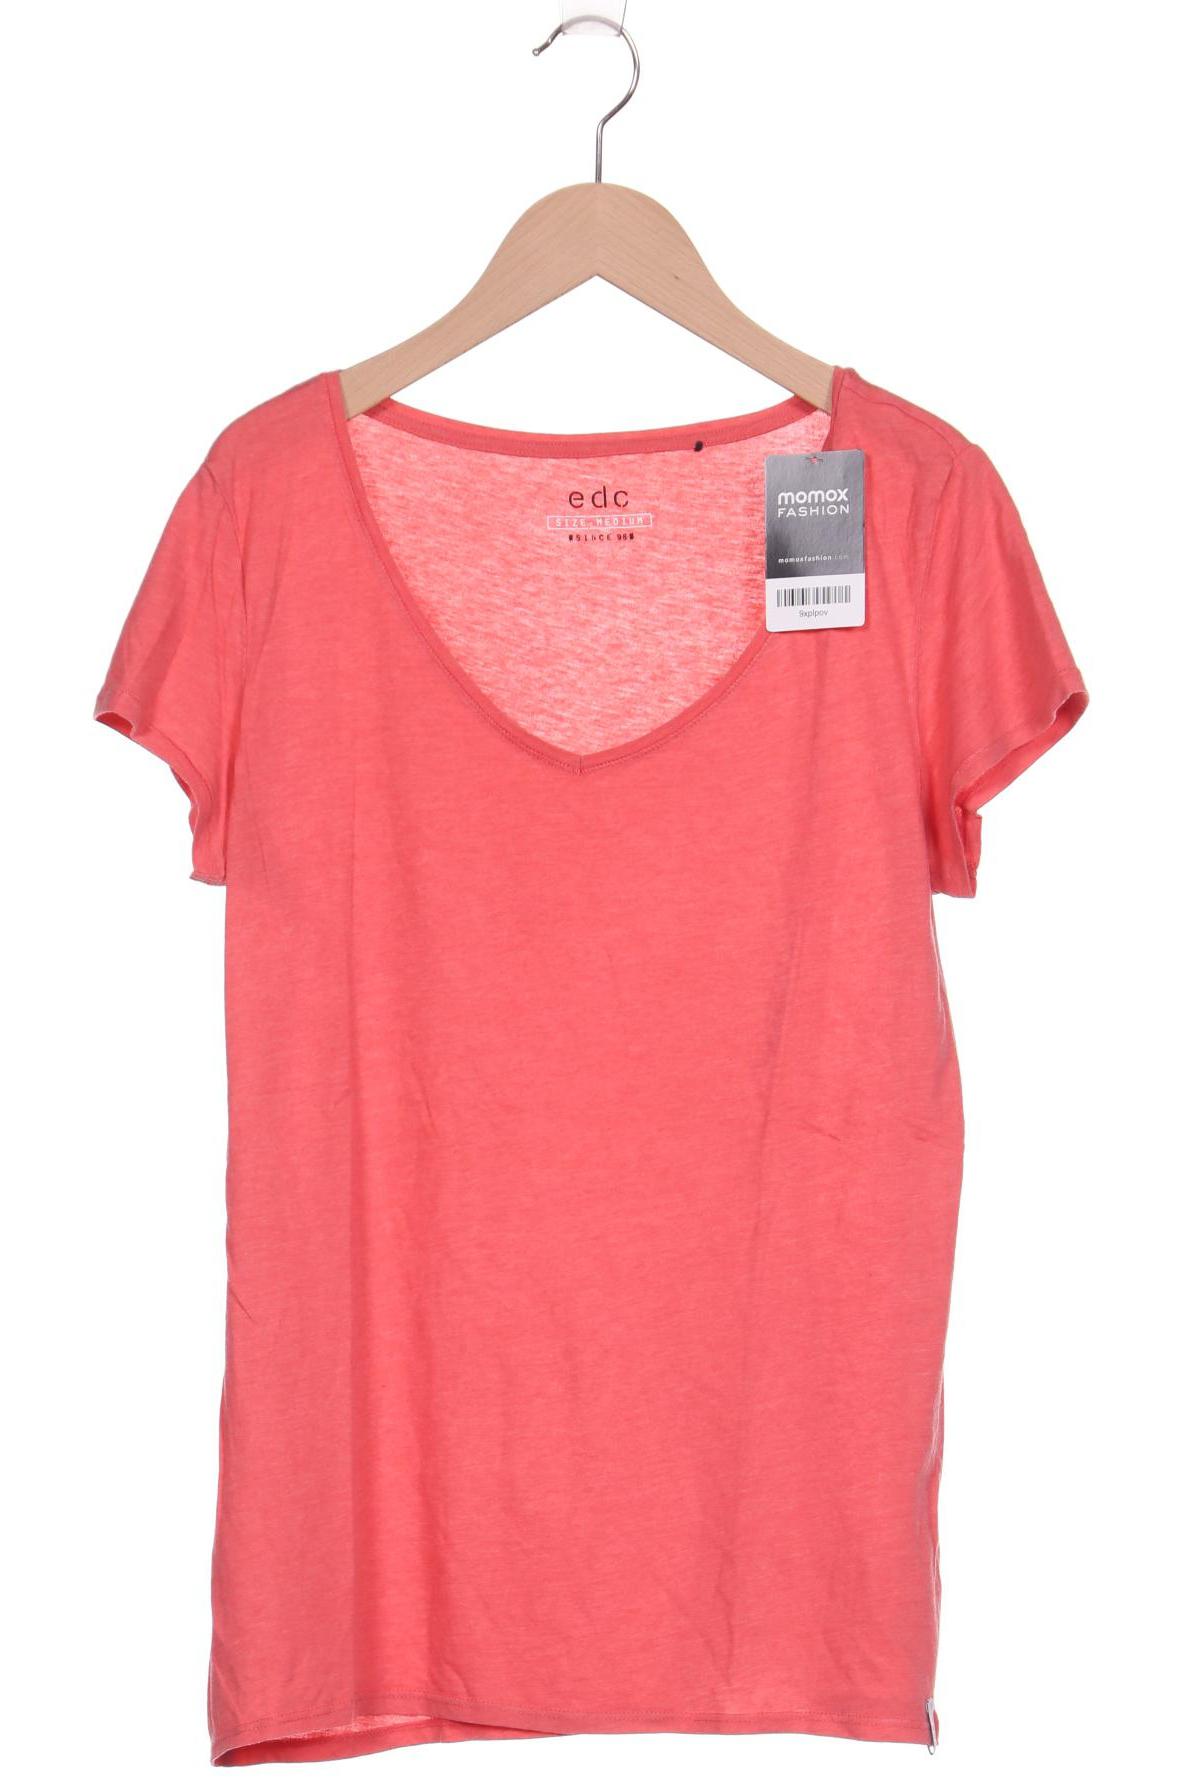 edc by Esprit Damen T-Shirt, pink, Gr. 38 von edc by esprit